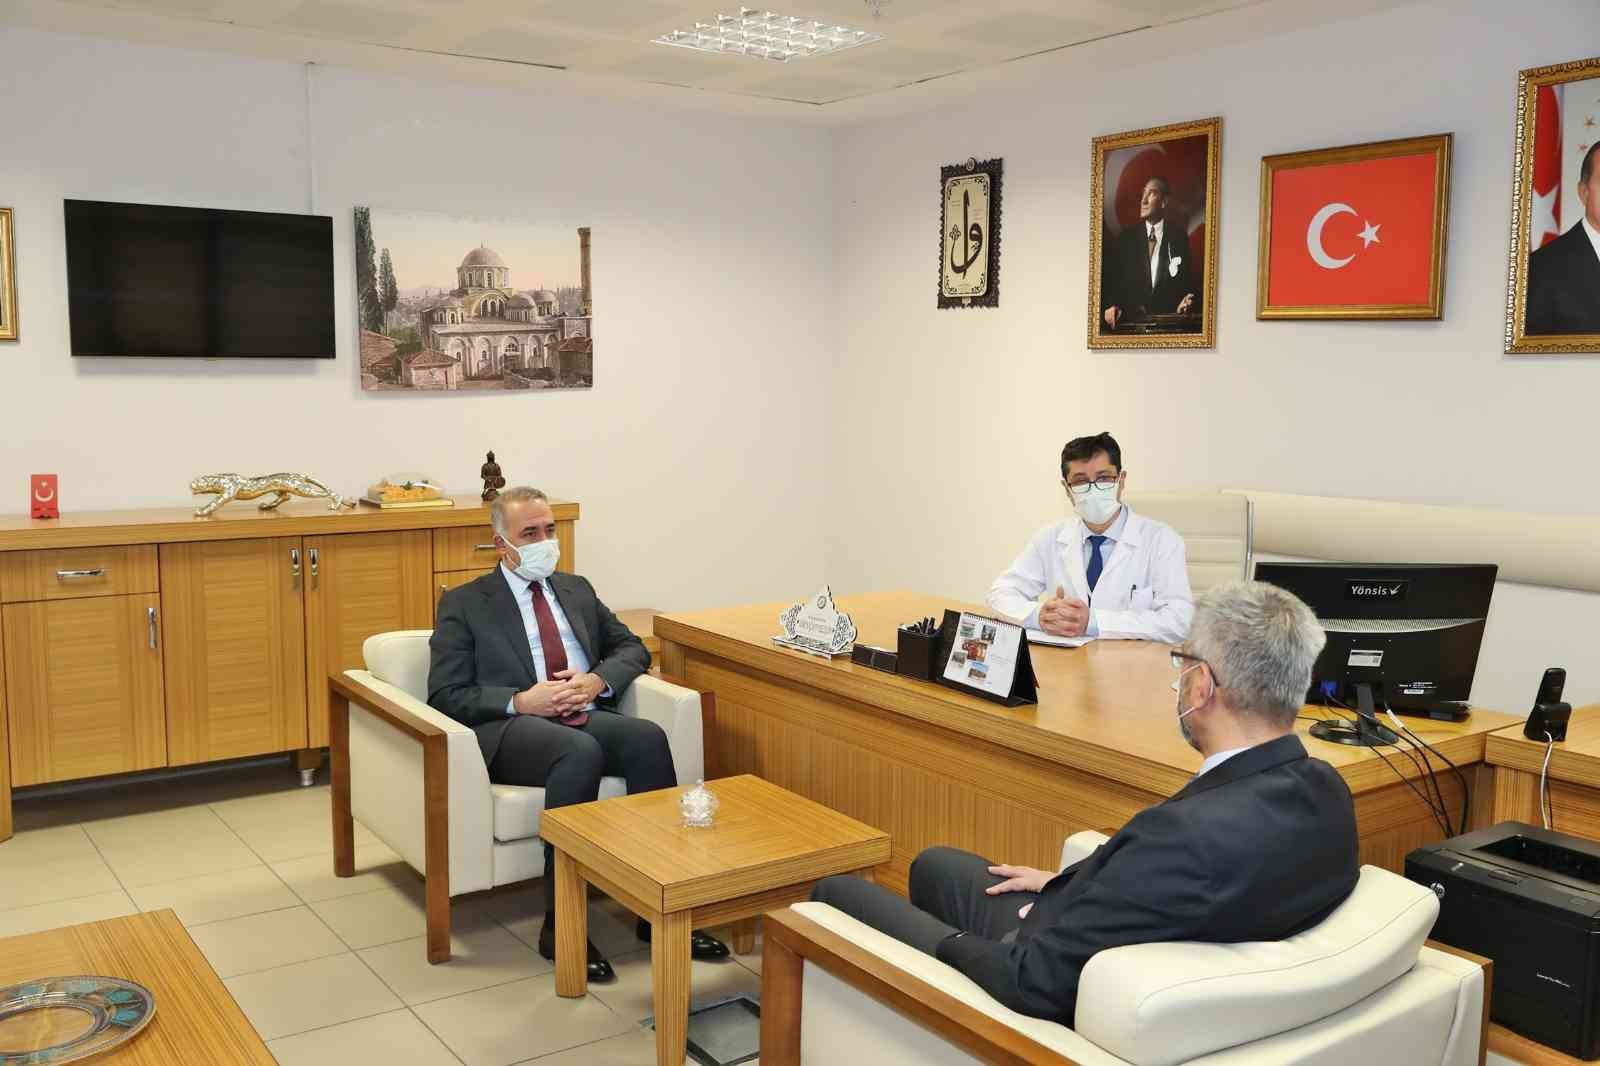 Sultangazi ADSM’de 15 yeni diş ünitesi hizmete alındı